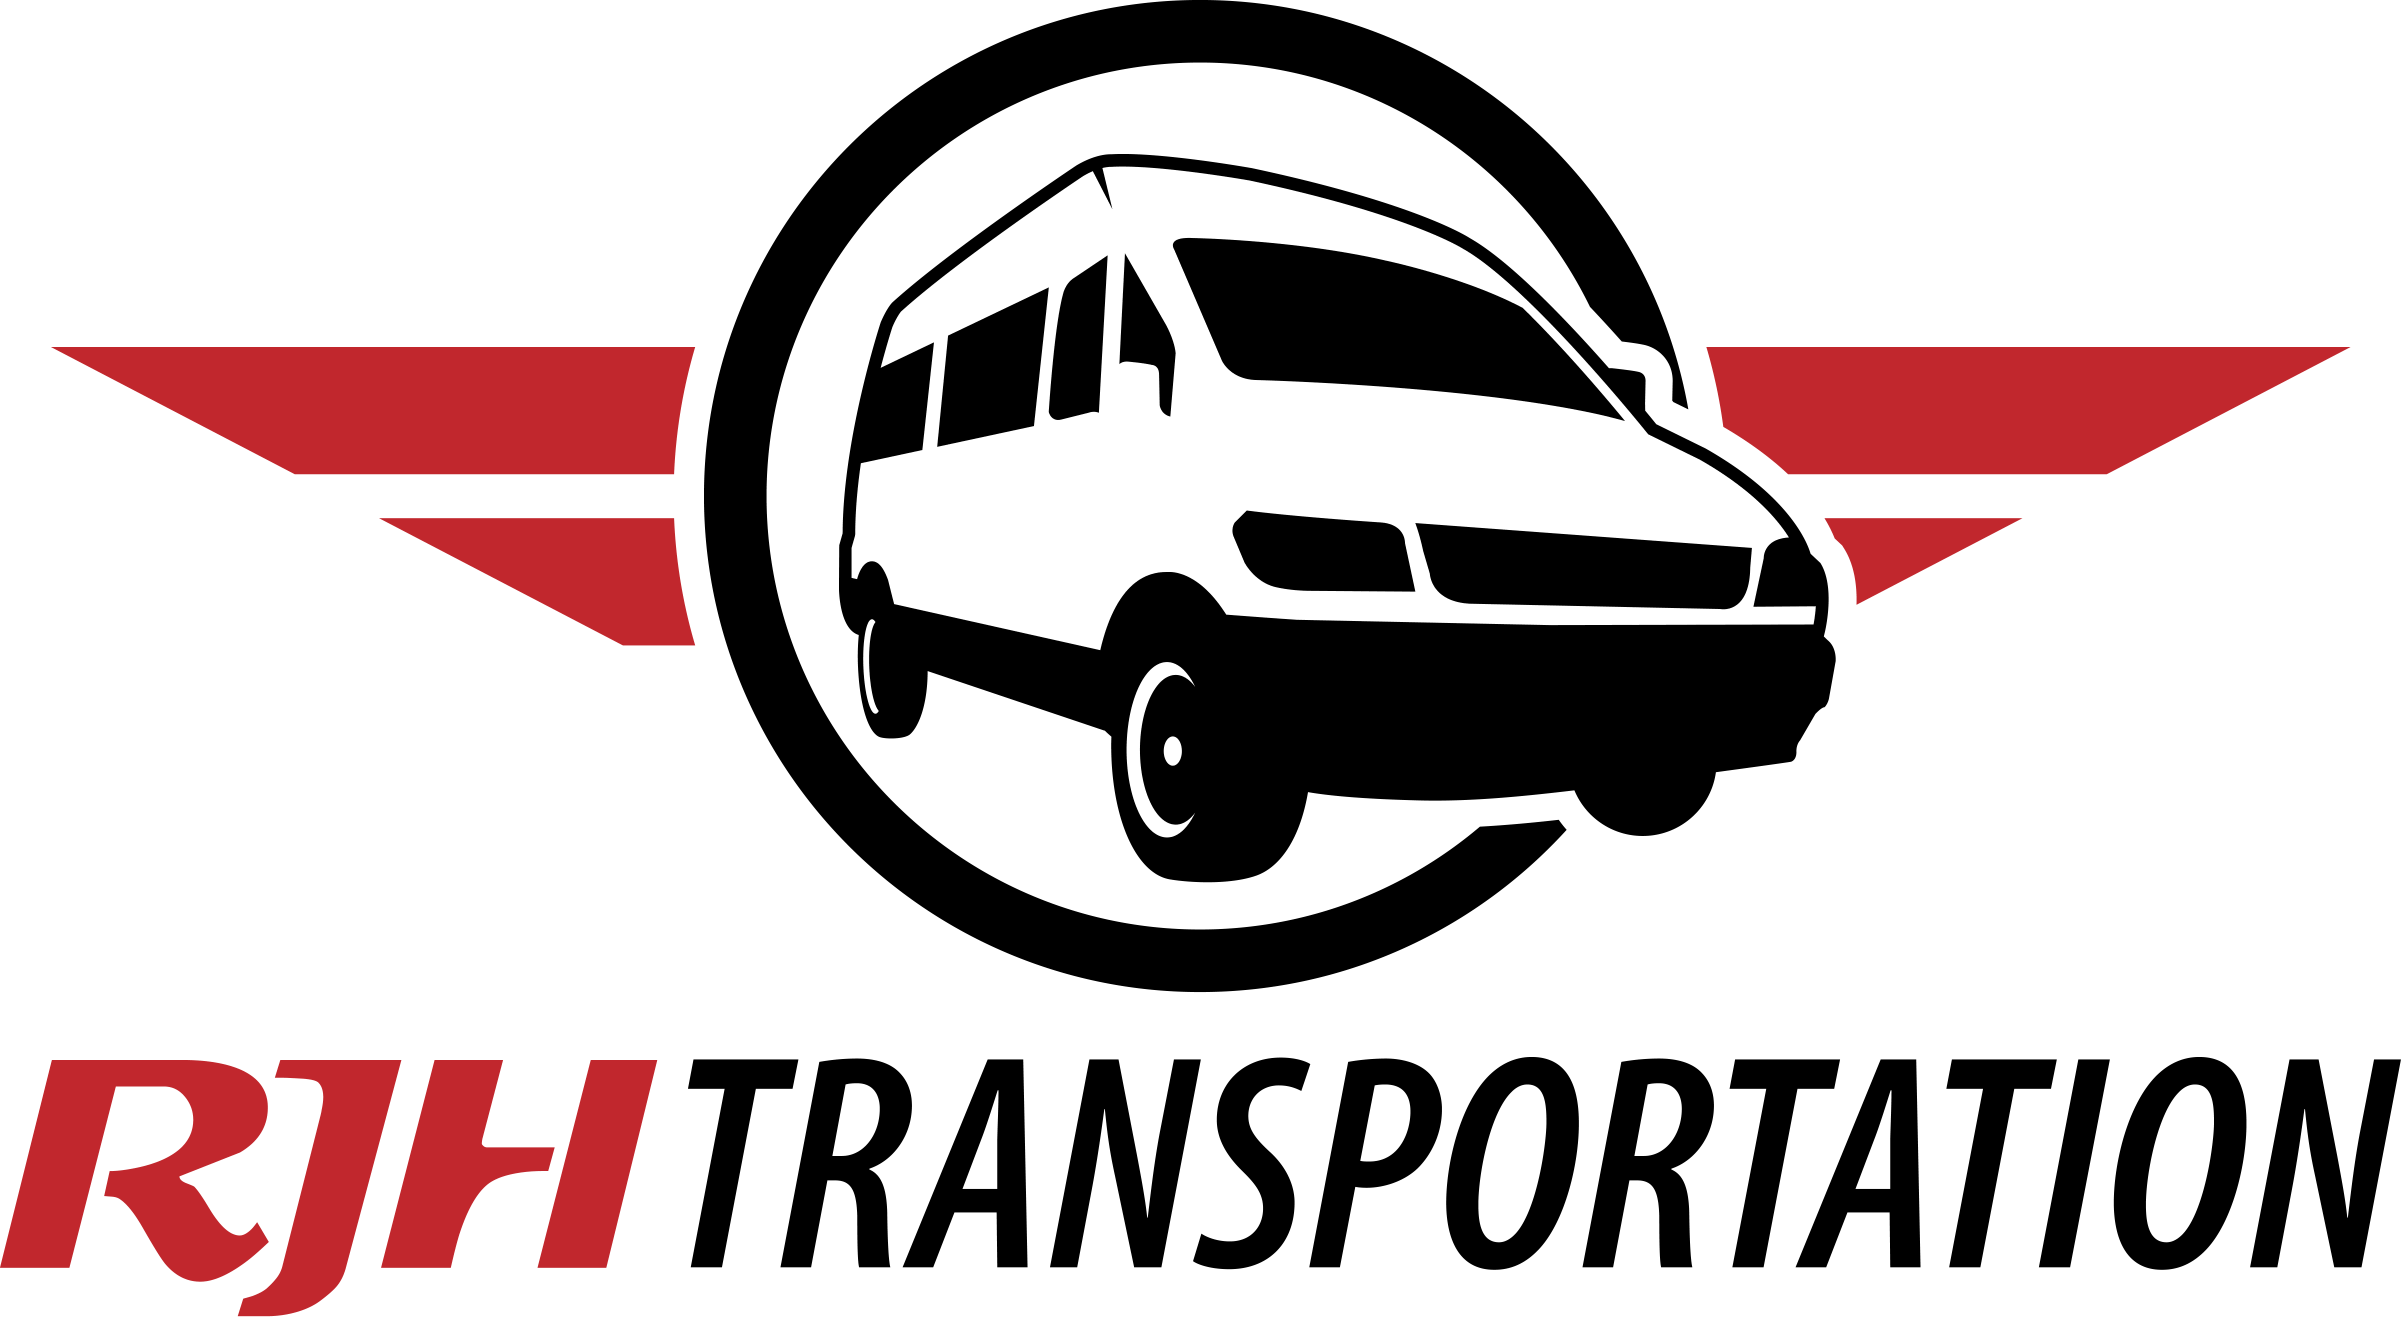 Car Transport Logo - Transport Logos